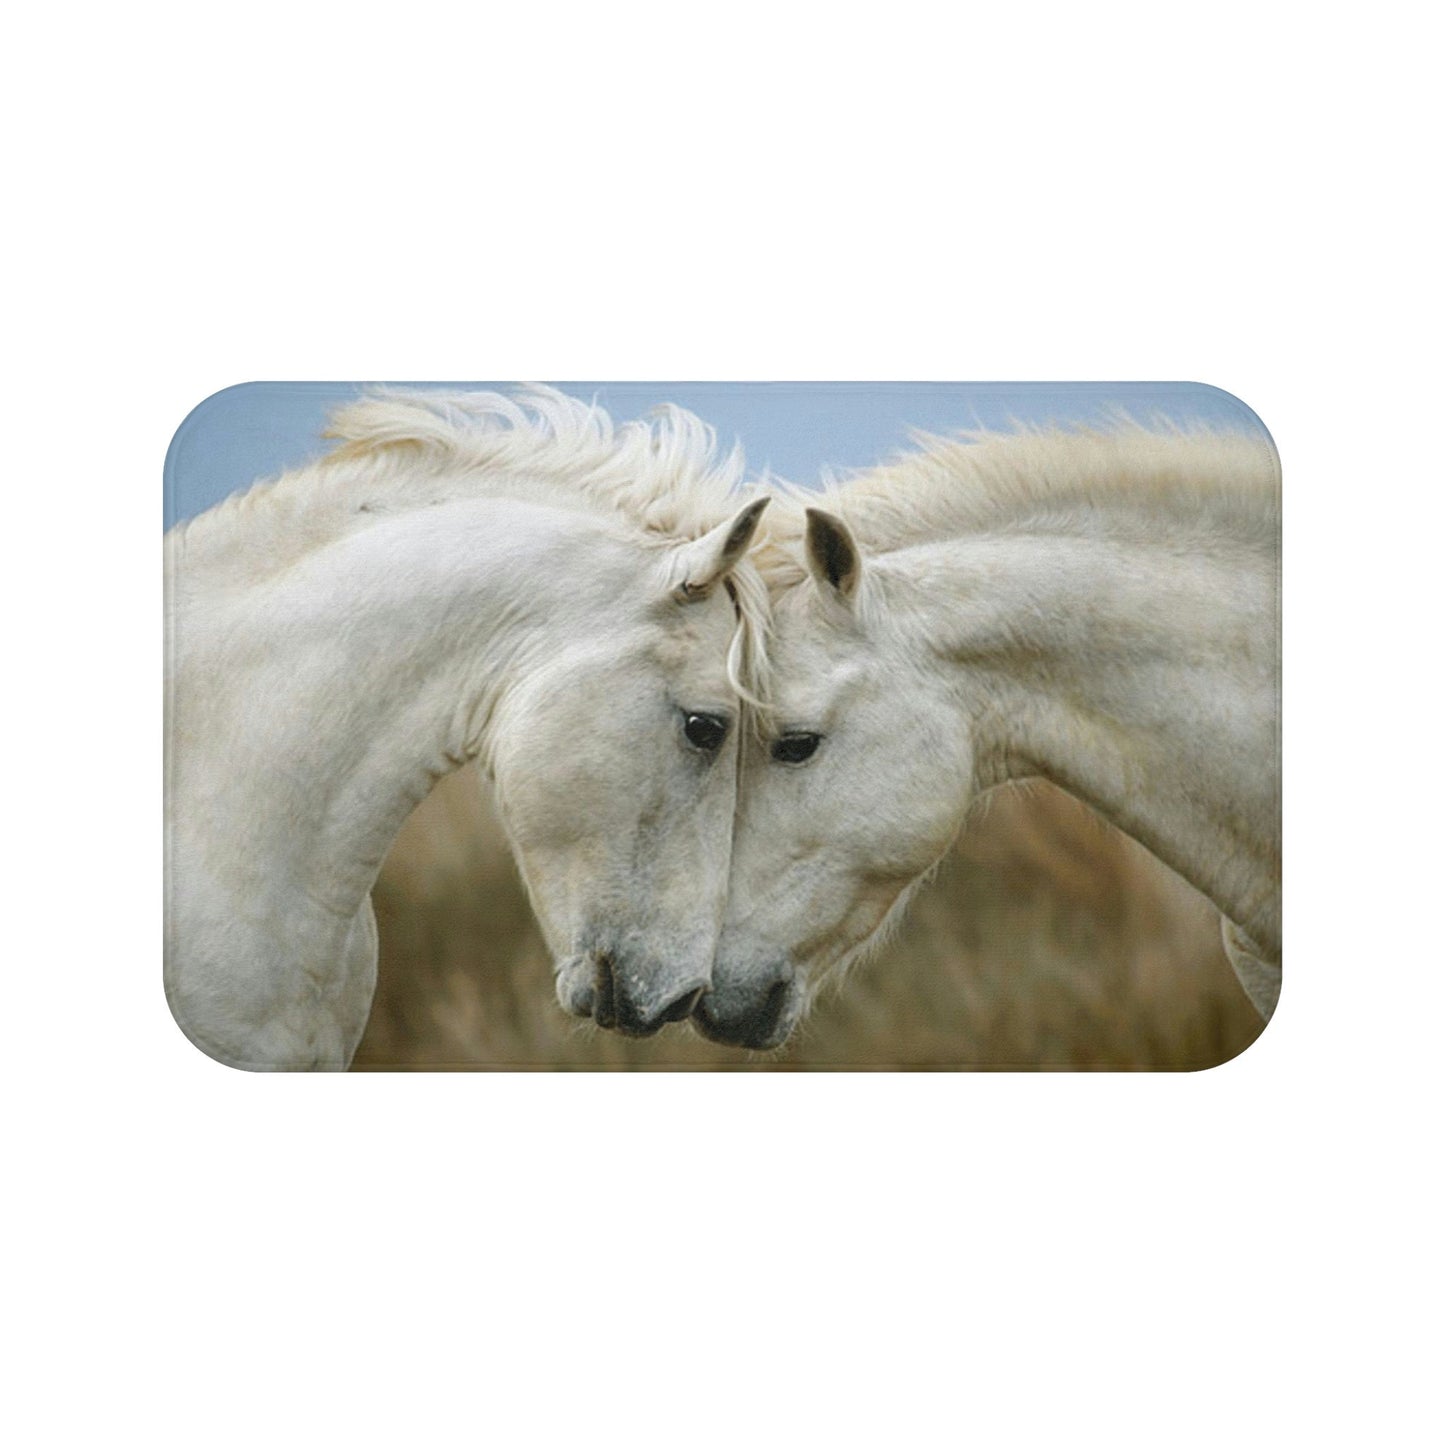 Gorgeous Horses Bath Mat*